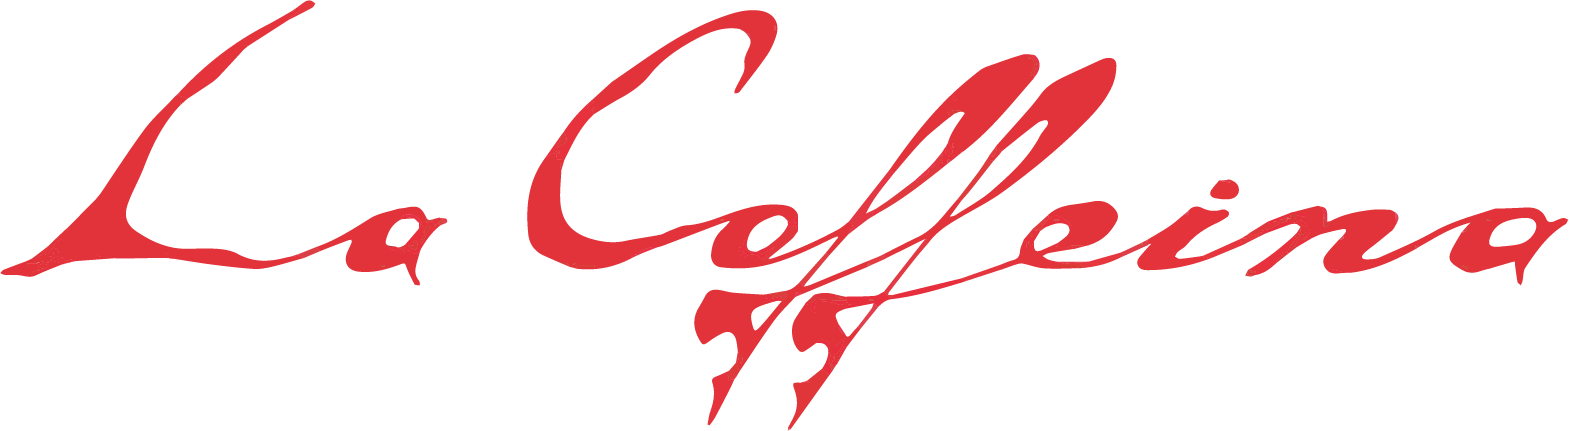 La Coffeina logo